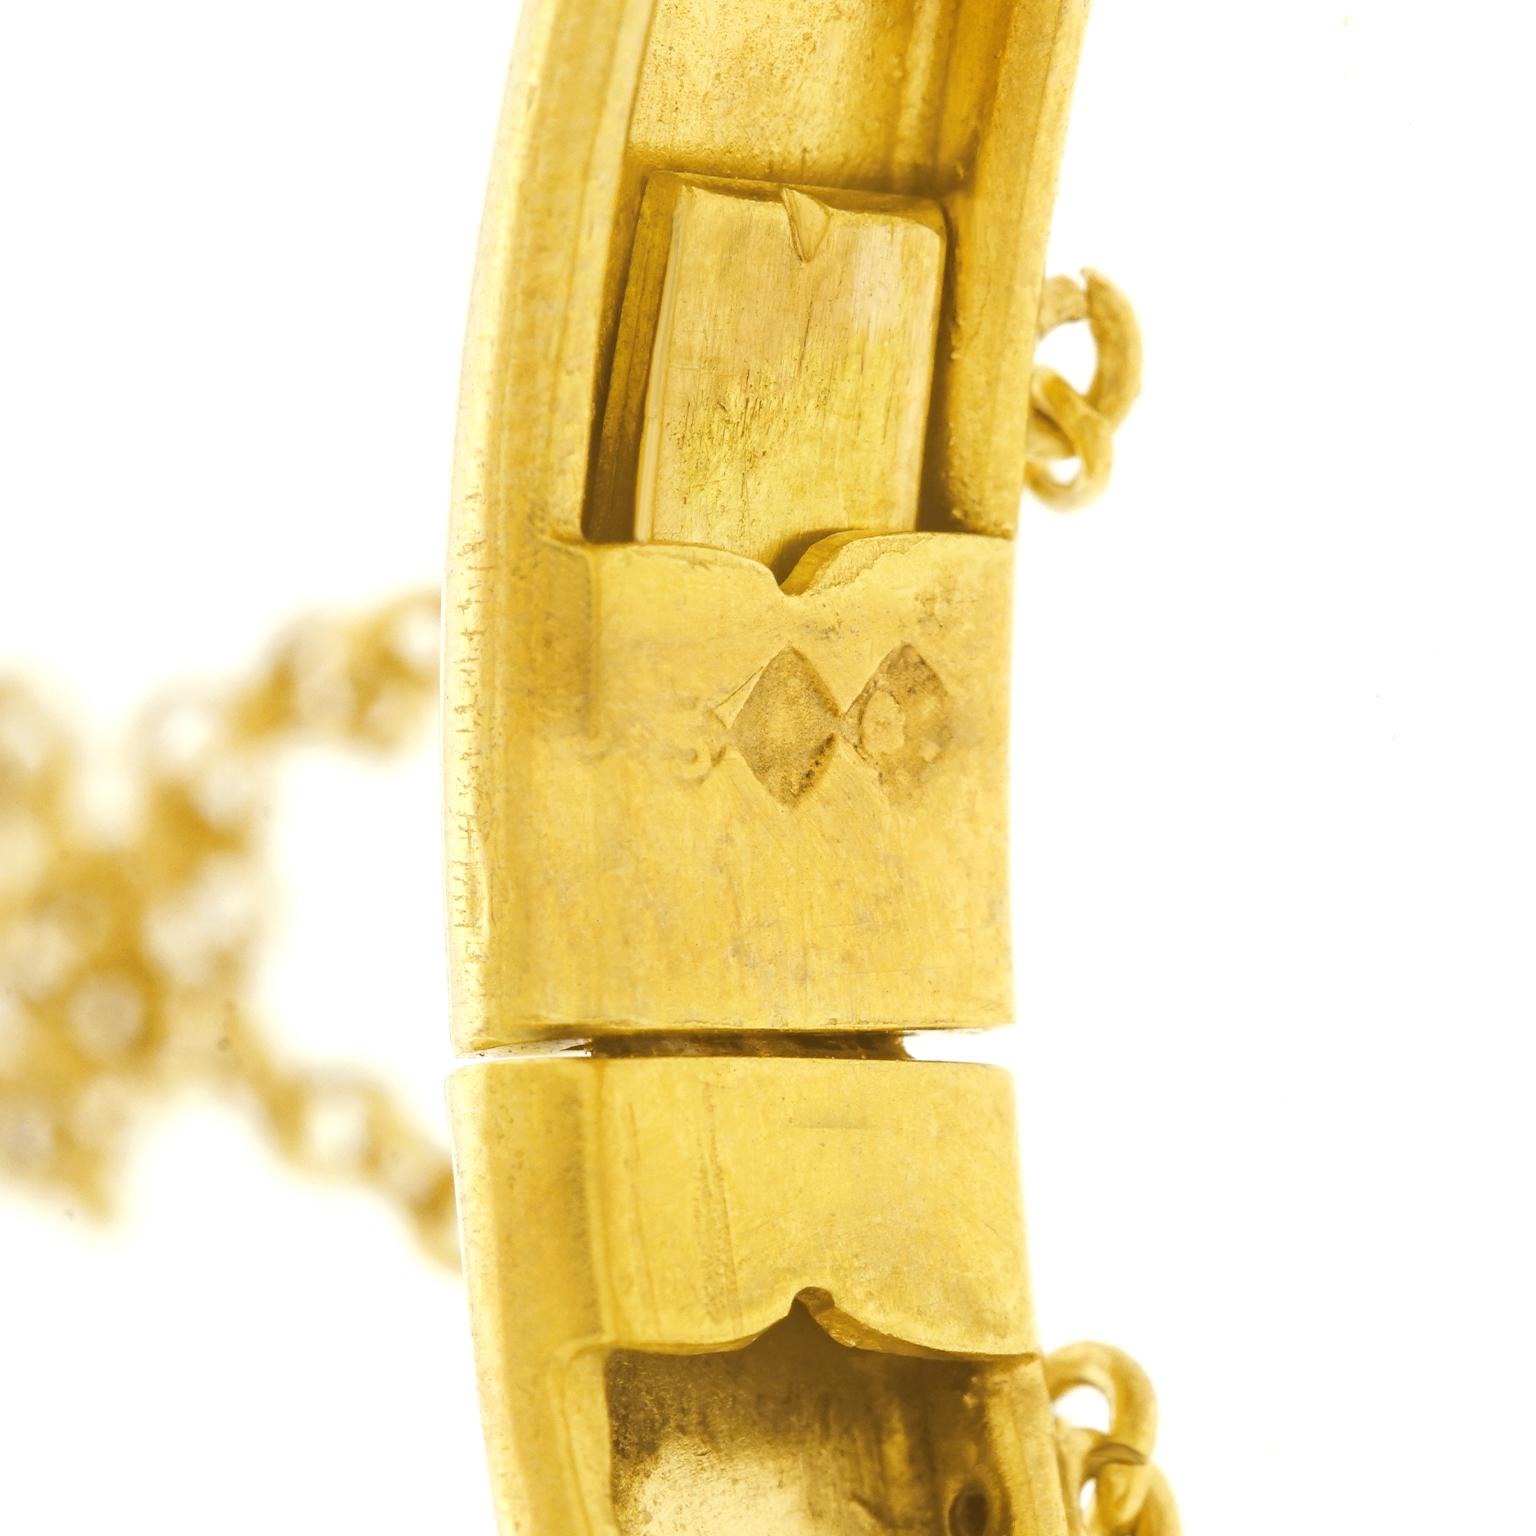 Women's Antique Gold Bangle Bracelet